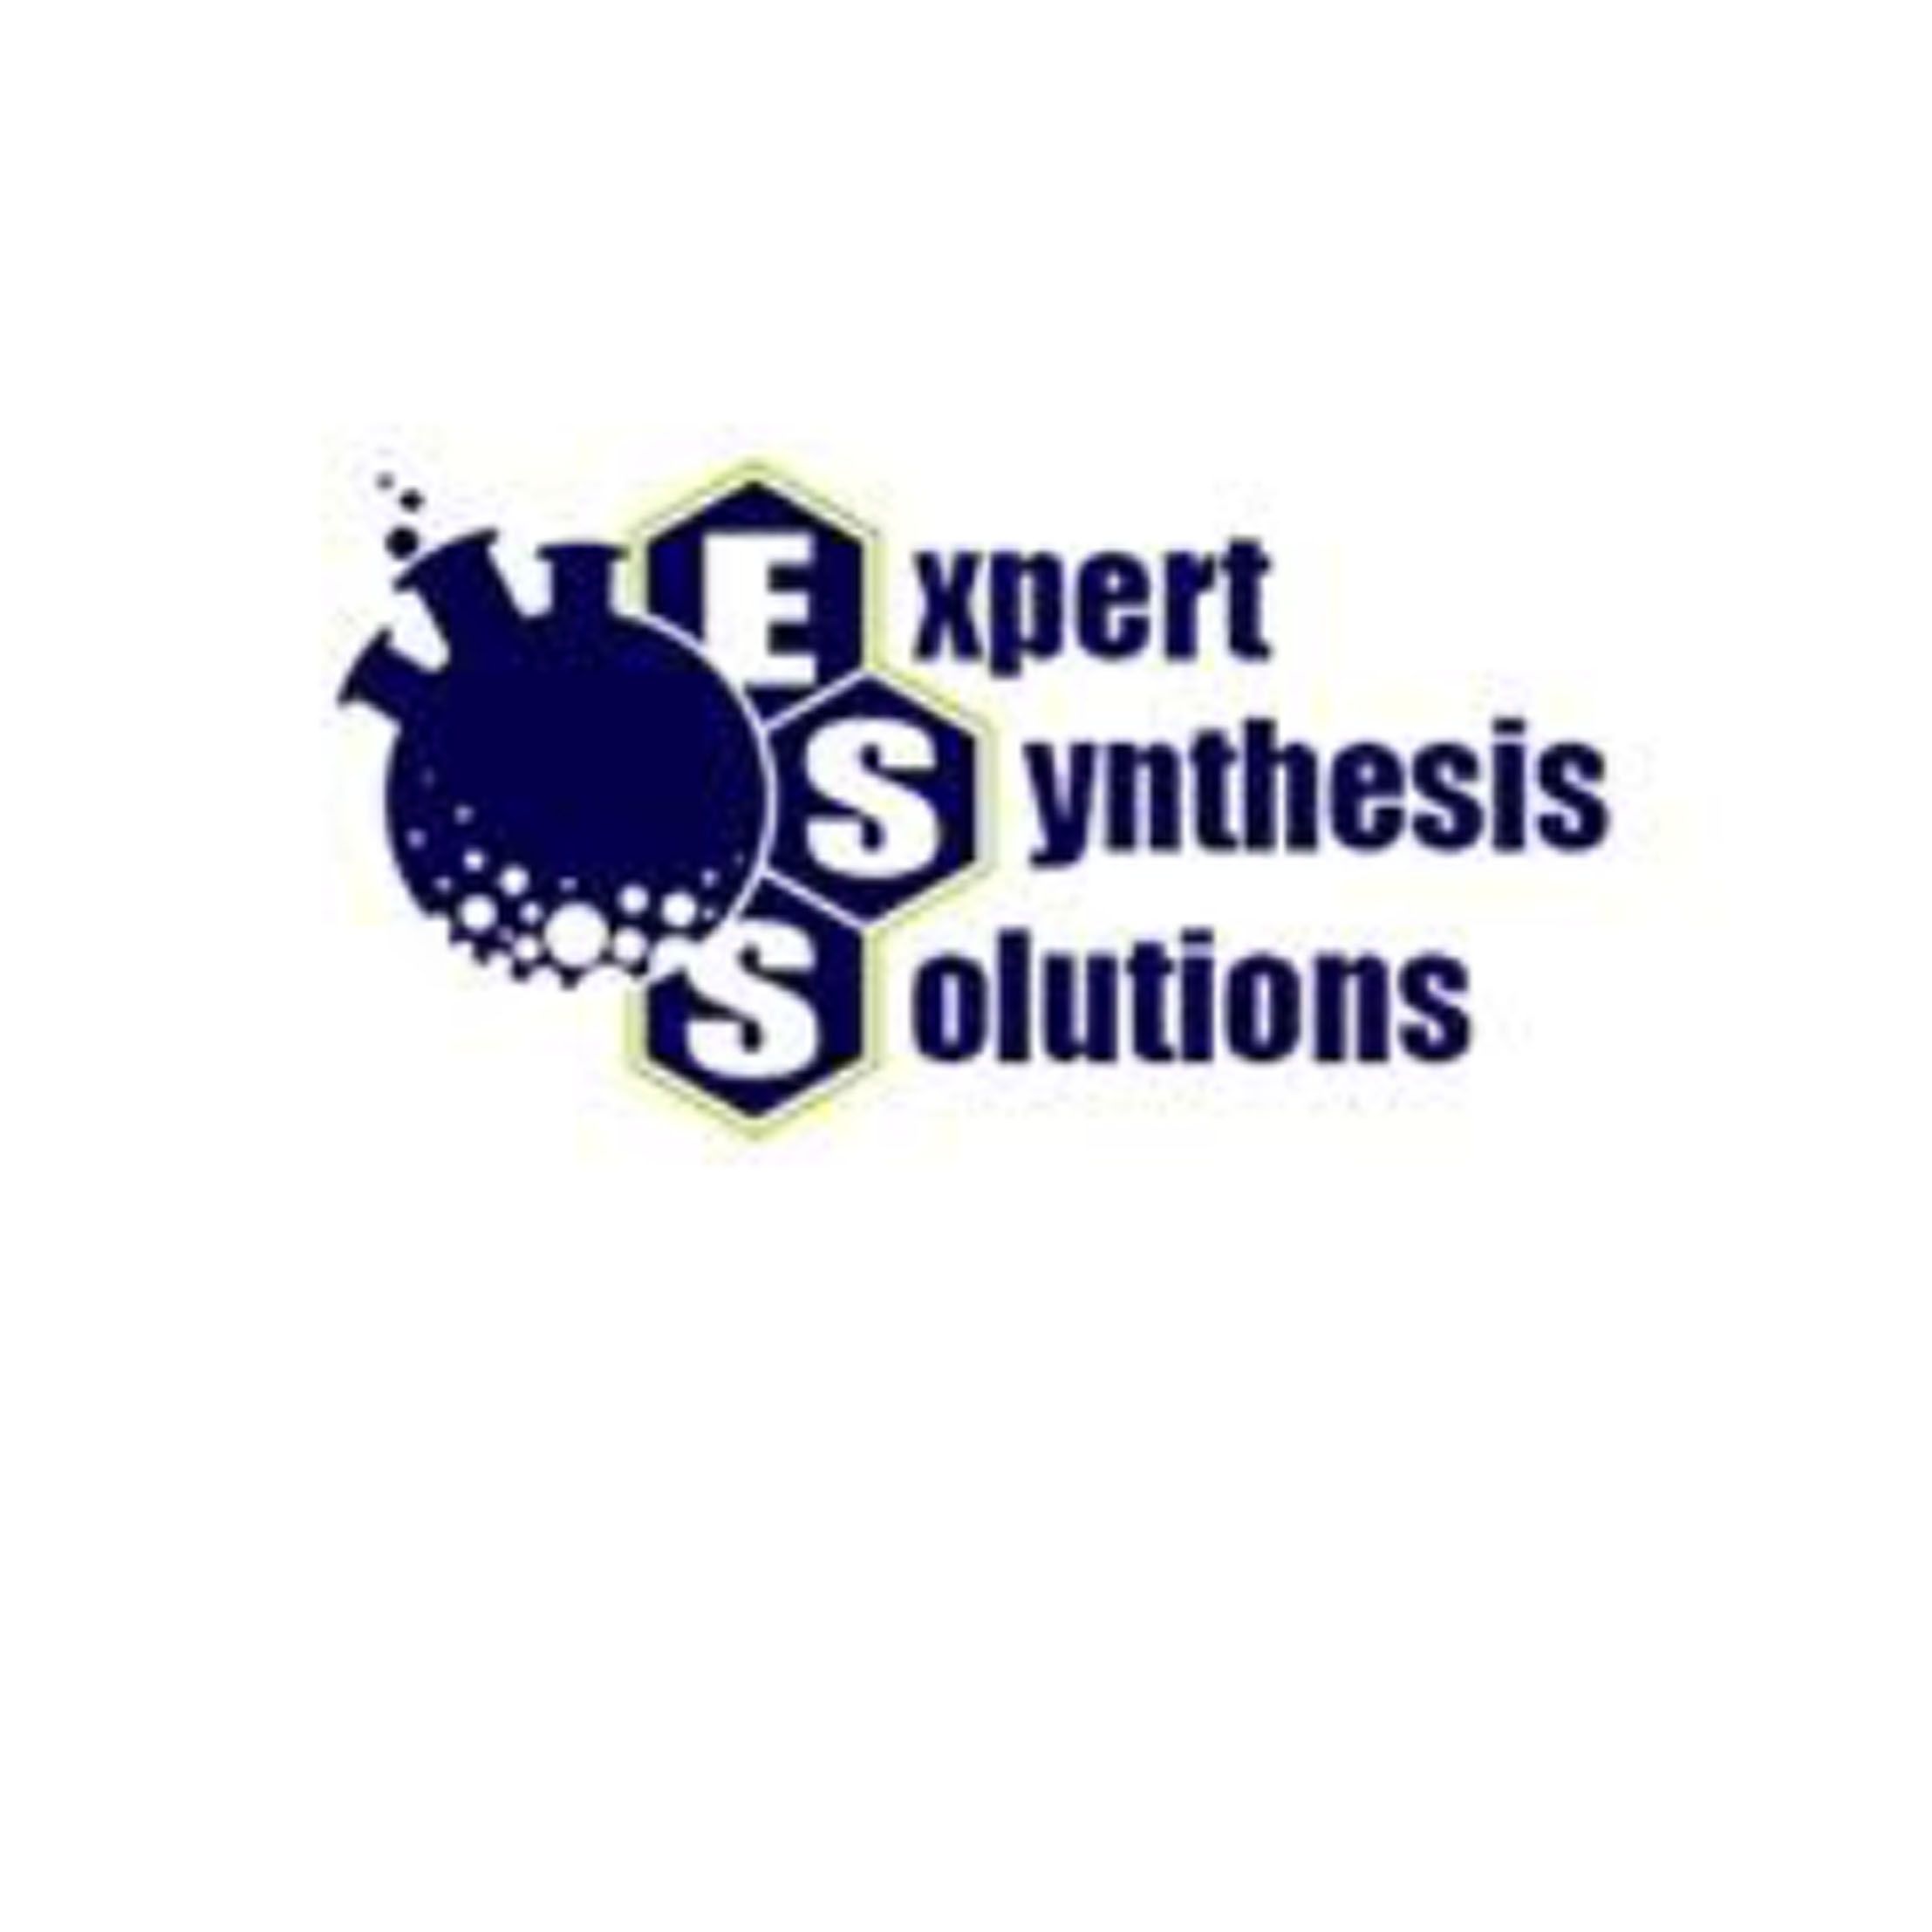 Expert Synthesis Solutions（ESS）胺类化合物、葡糖苷酸、杂环类化合物、异硫qing酸脂类化合物、类固醇化合物